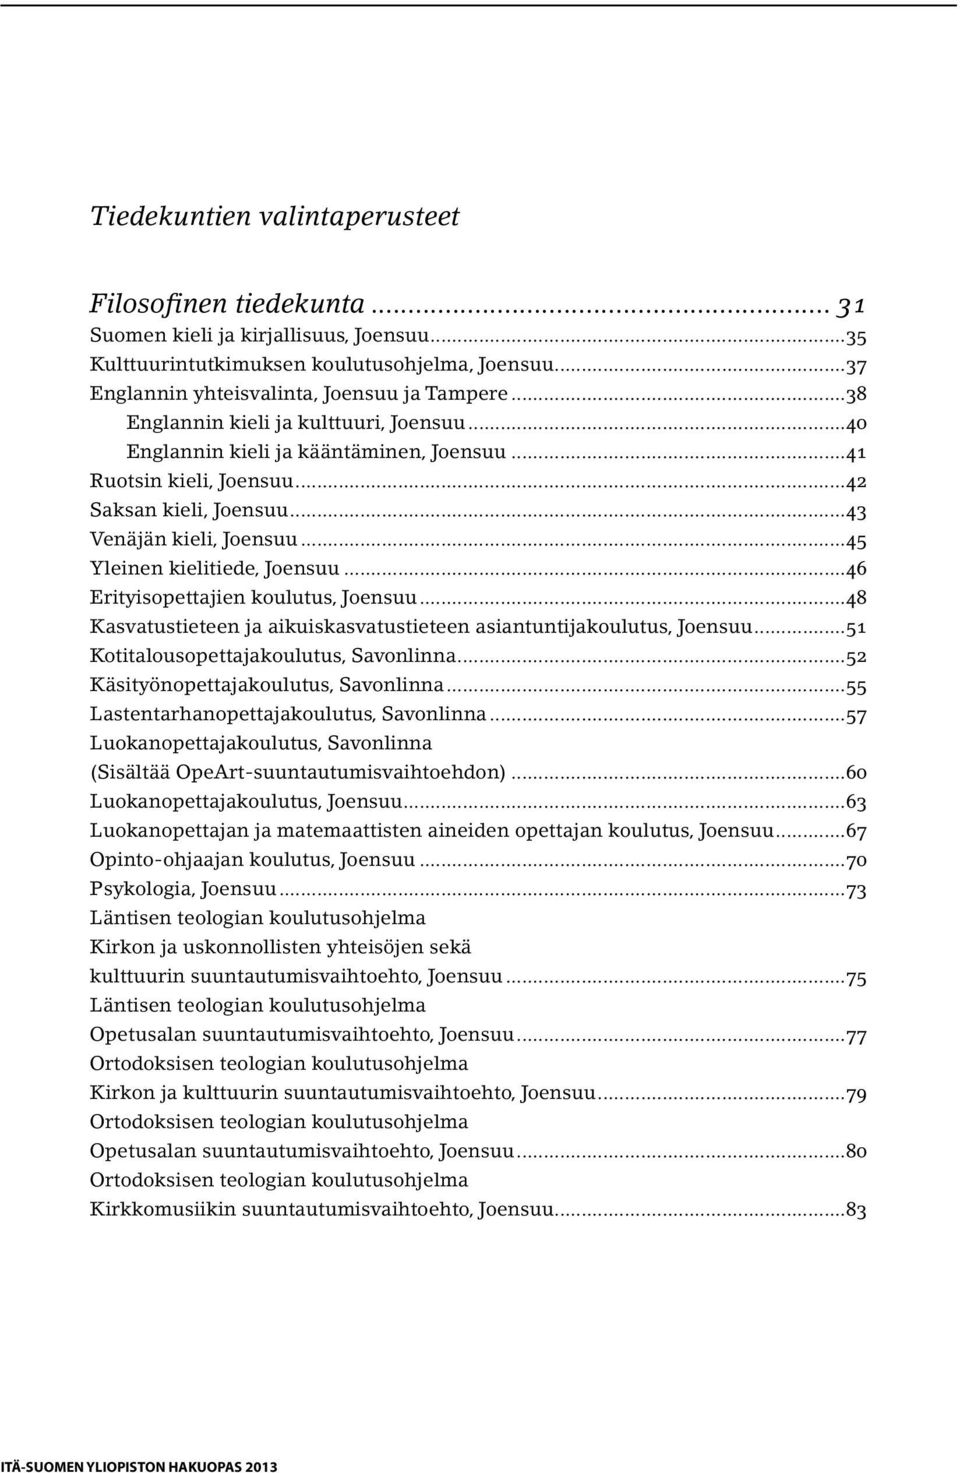 ..45 Yleinen kielitiede, Joensuu...46 Erityisopettajien koulutus, Joensuu...48 Kasvatustieteen ja aikuiskasvatustieteen asiantuntijakoulutus, Joensuu...51 Kotitalousopettajakoulutus, Savonlinna.